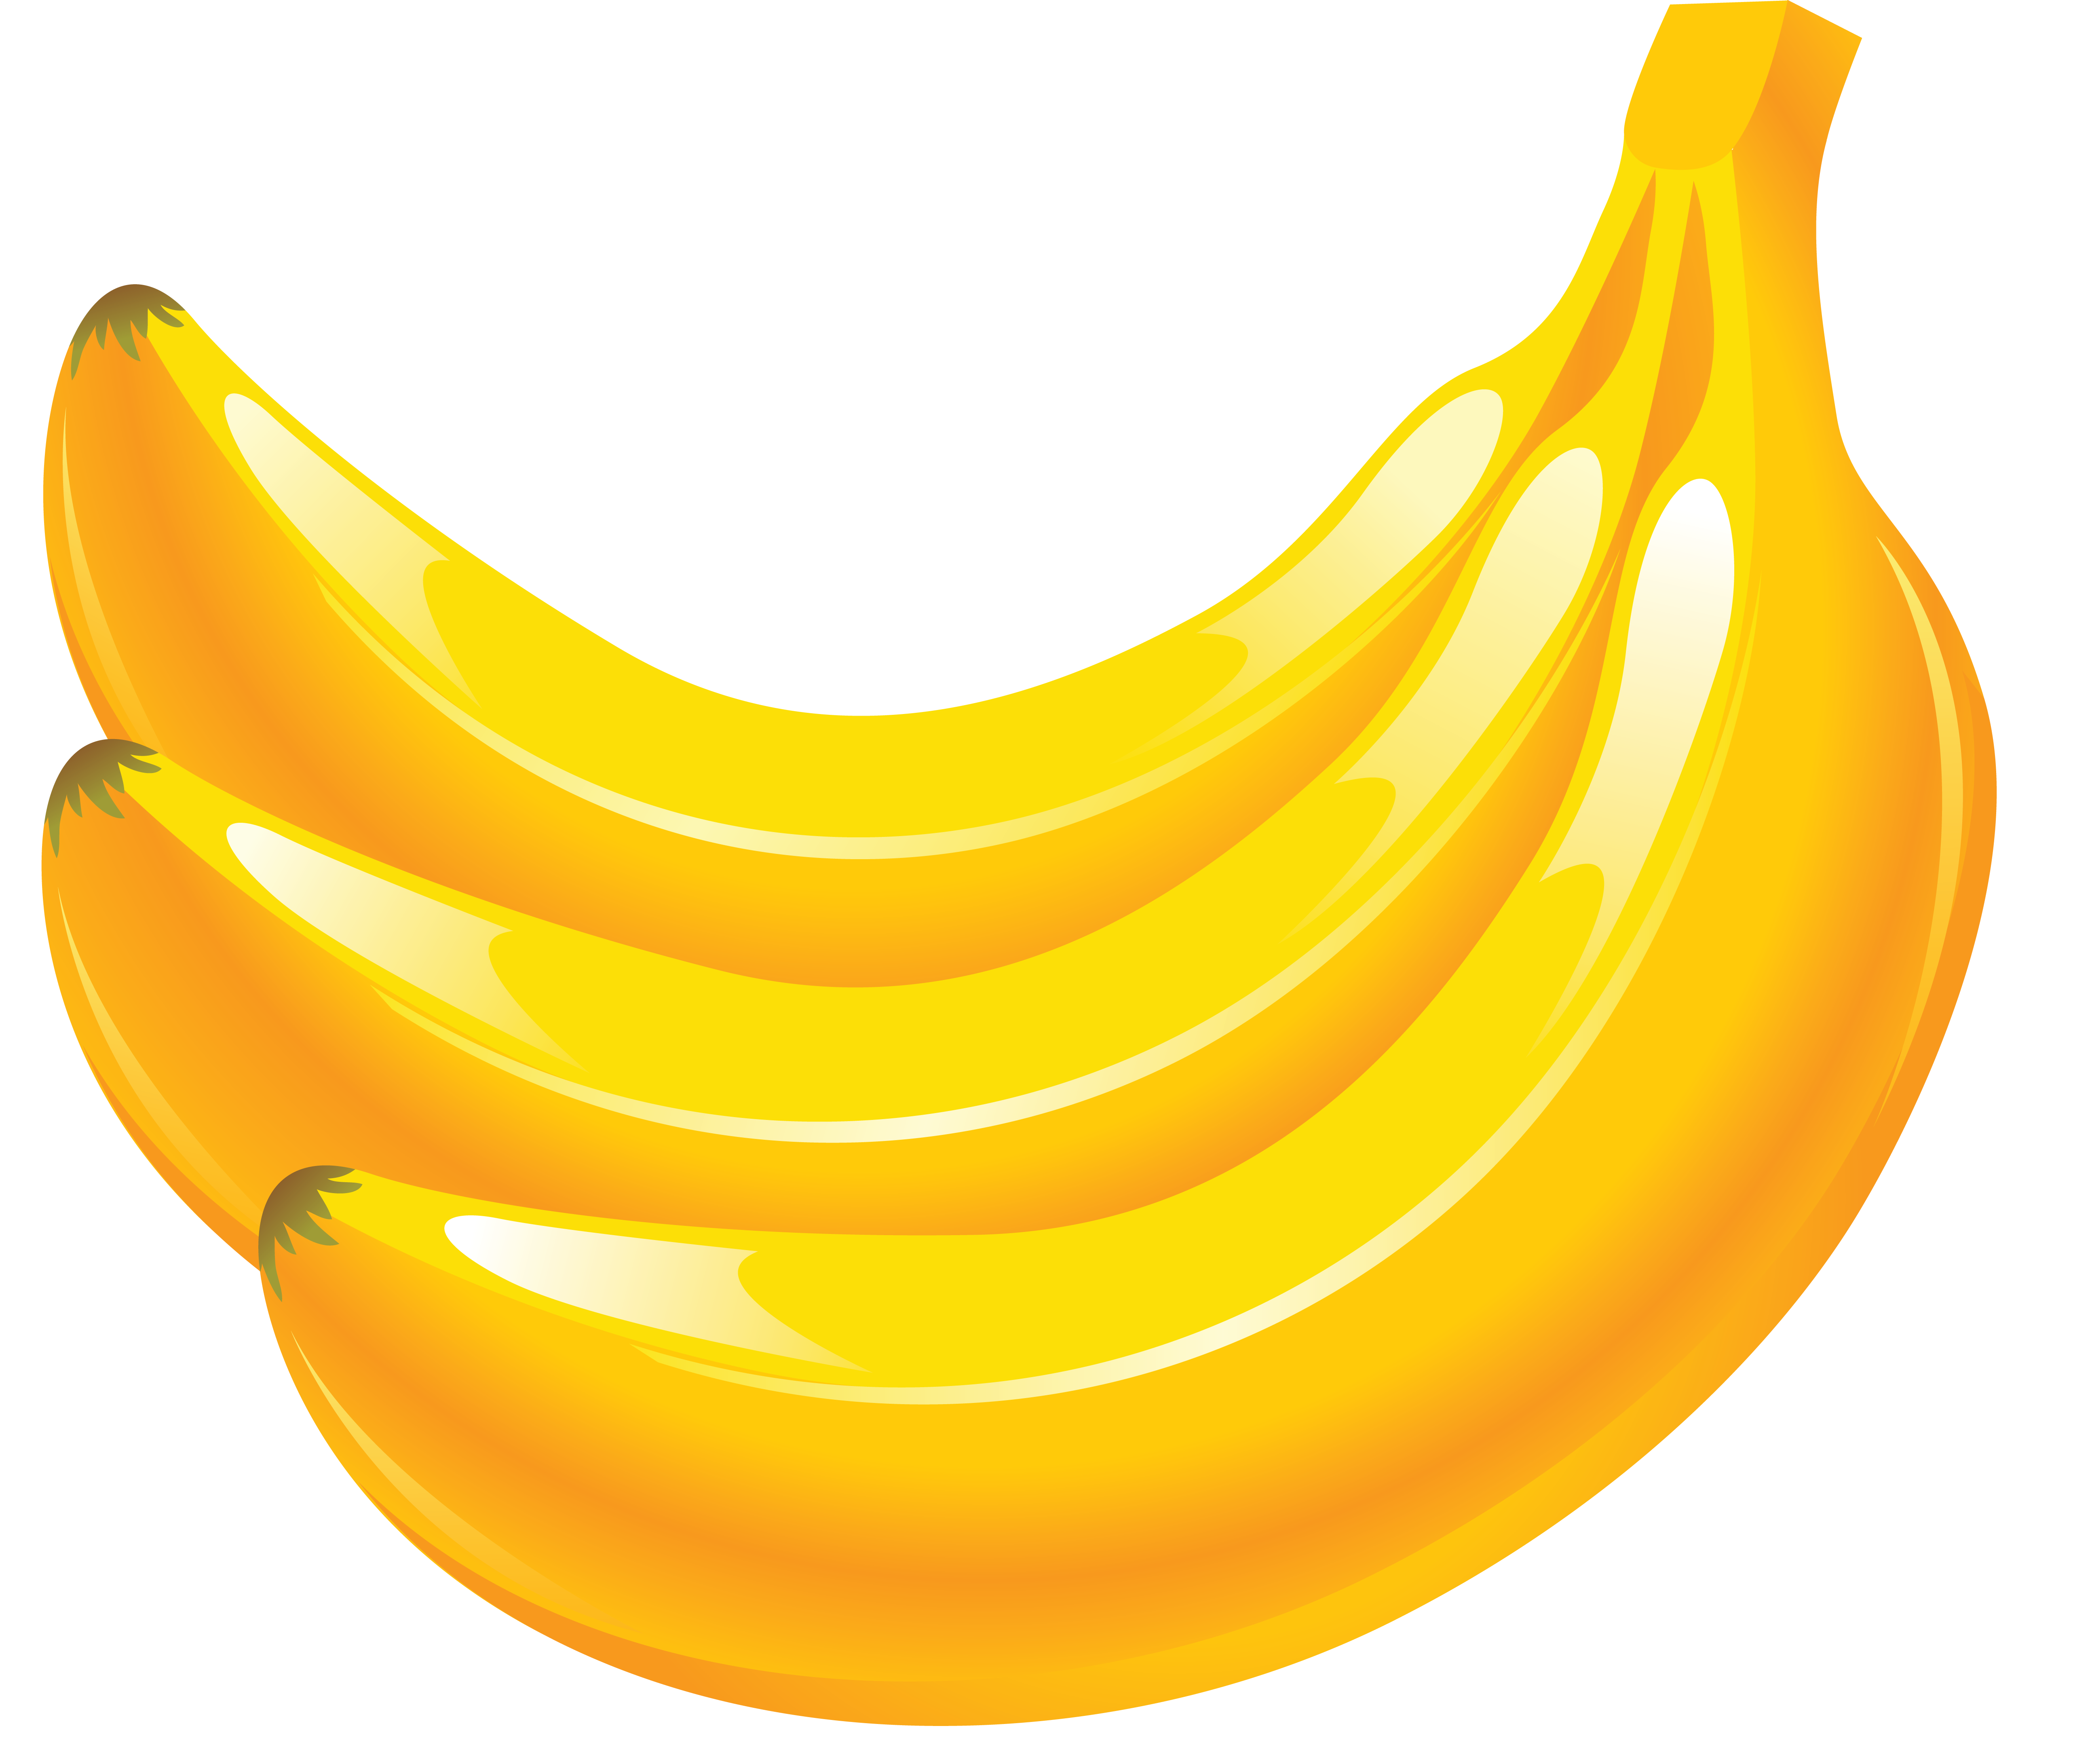 黄色いバナナ3本